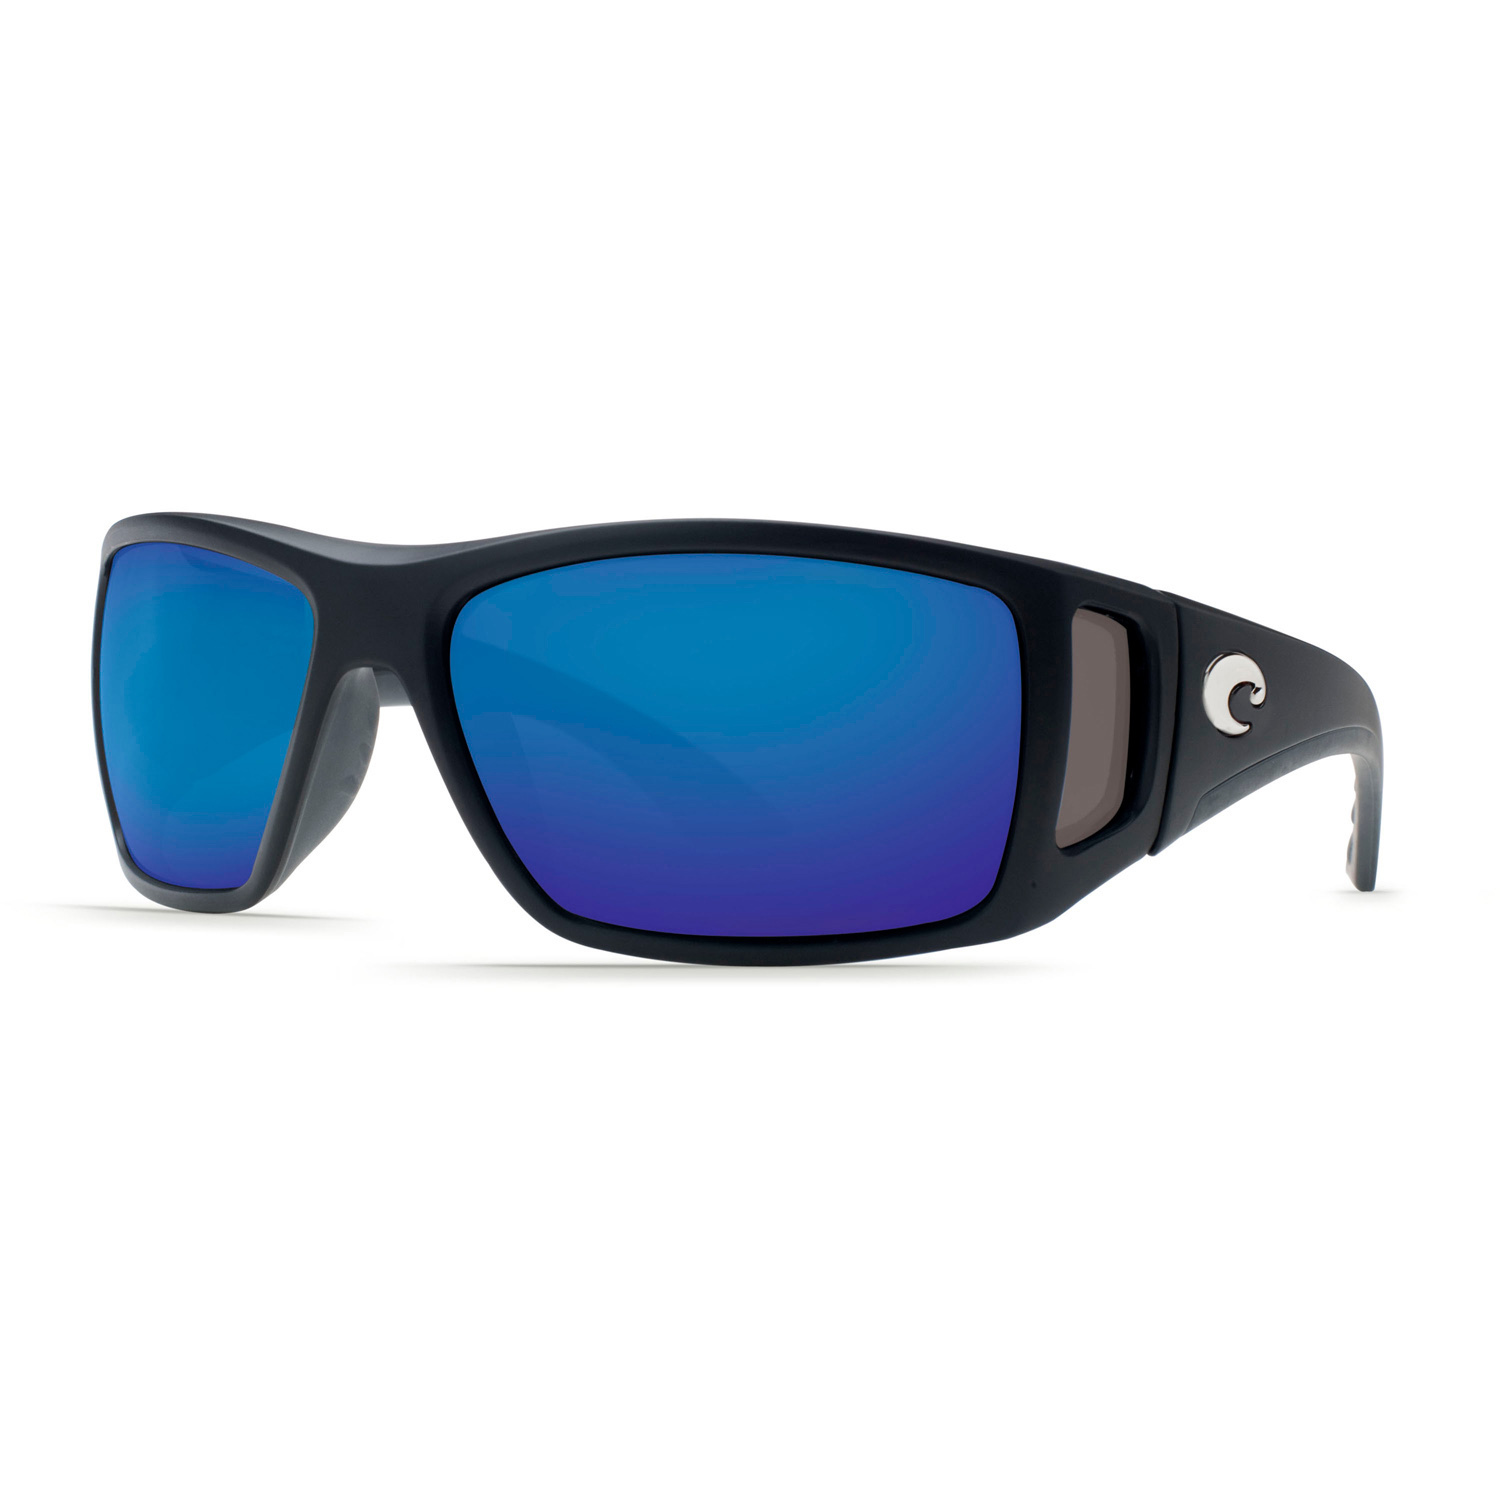 Bomba Polarized Sunglasses | West Marine